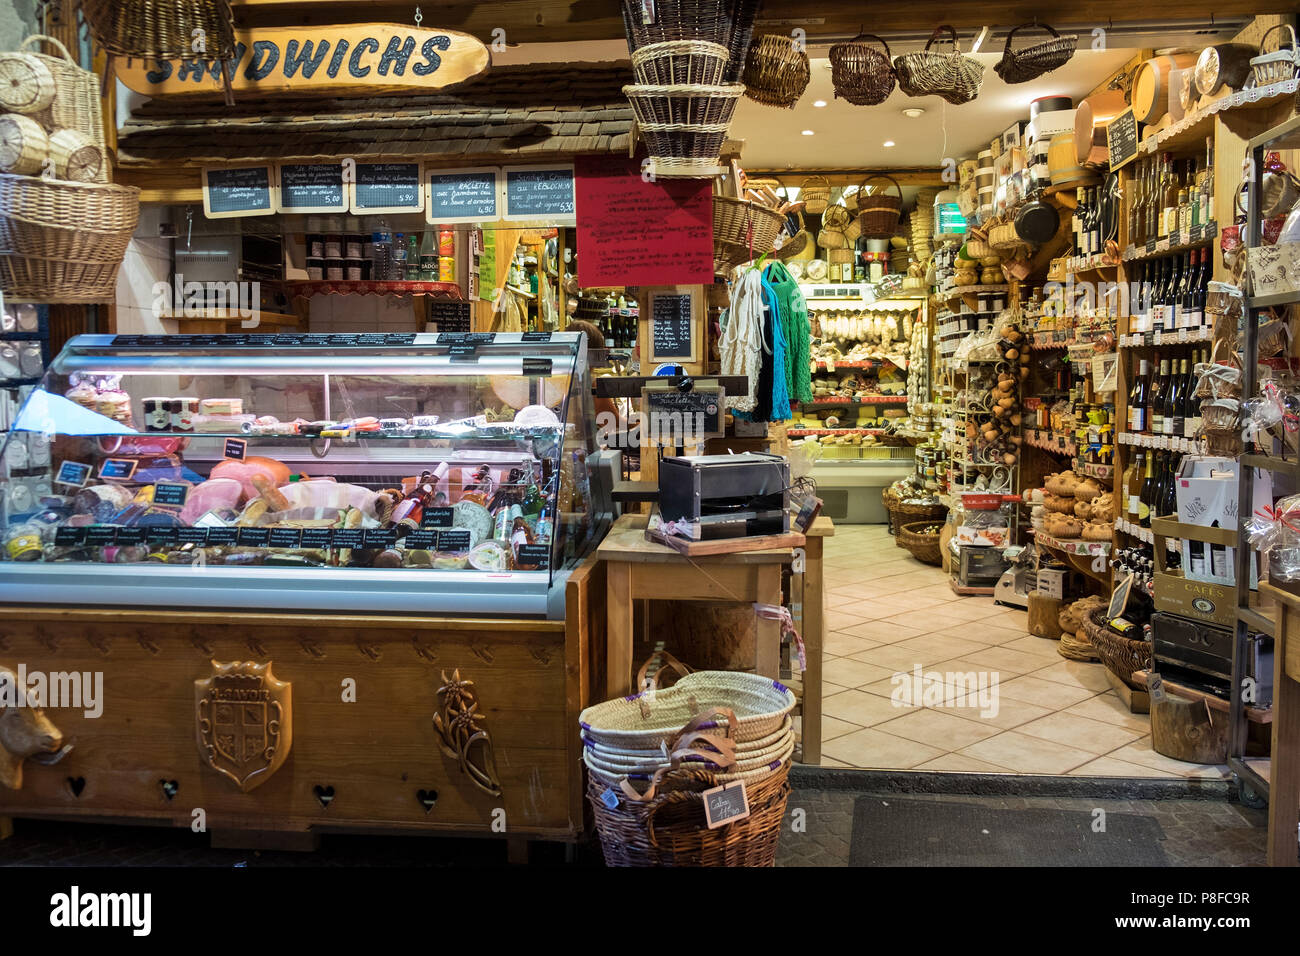 Delicatessan shop, Annecy, Haute-Savoie, France Stock Photo